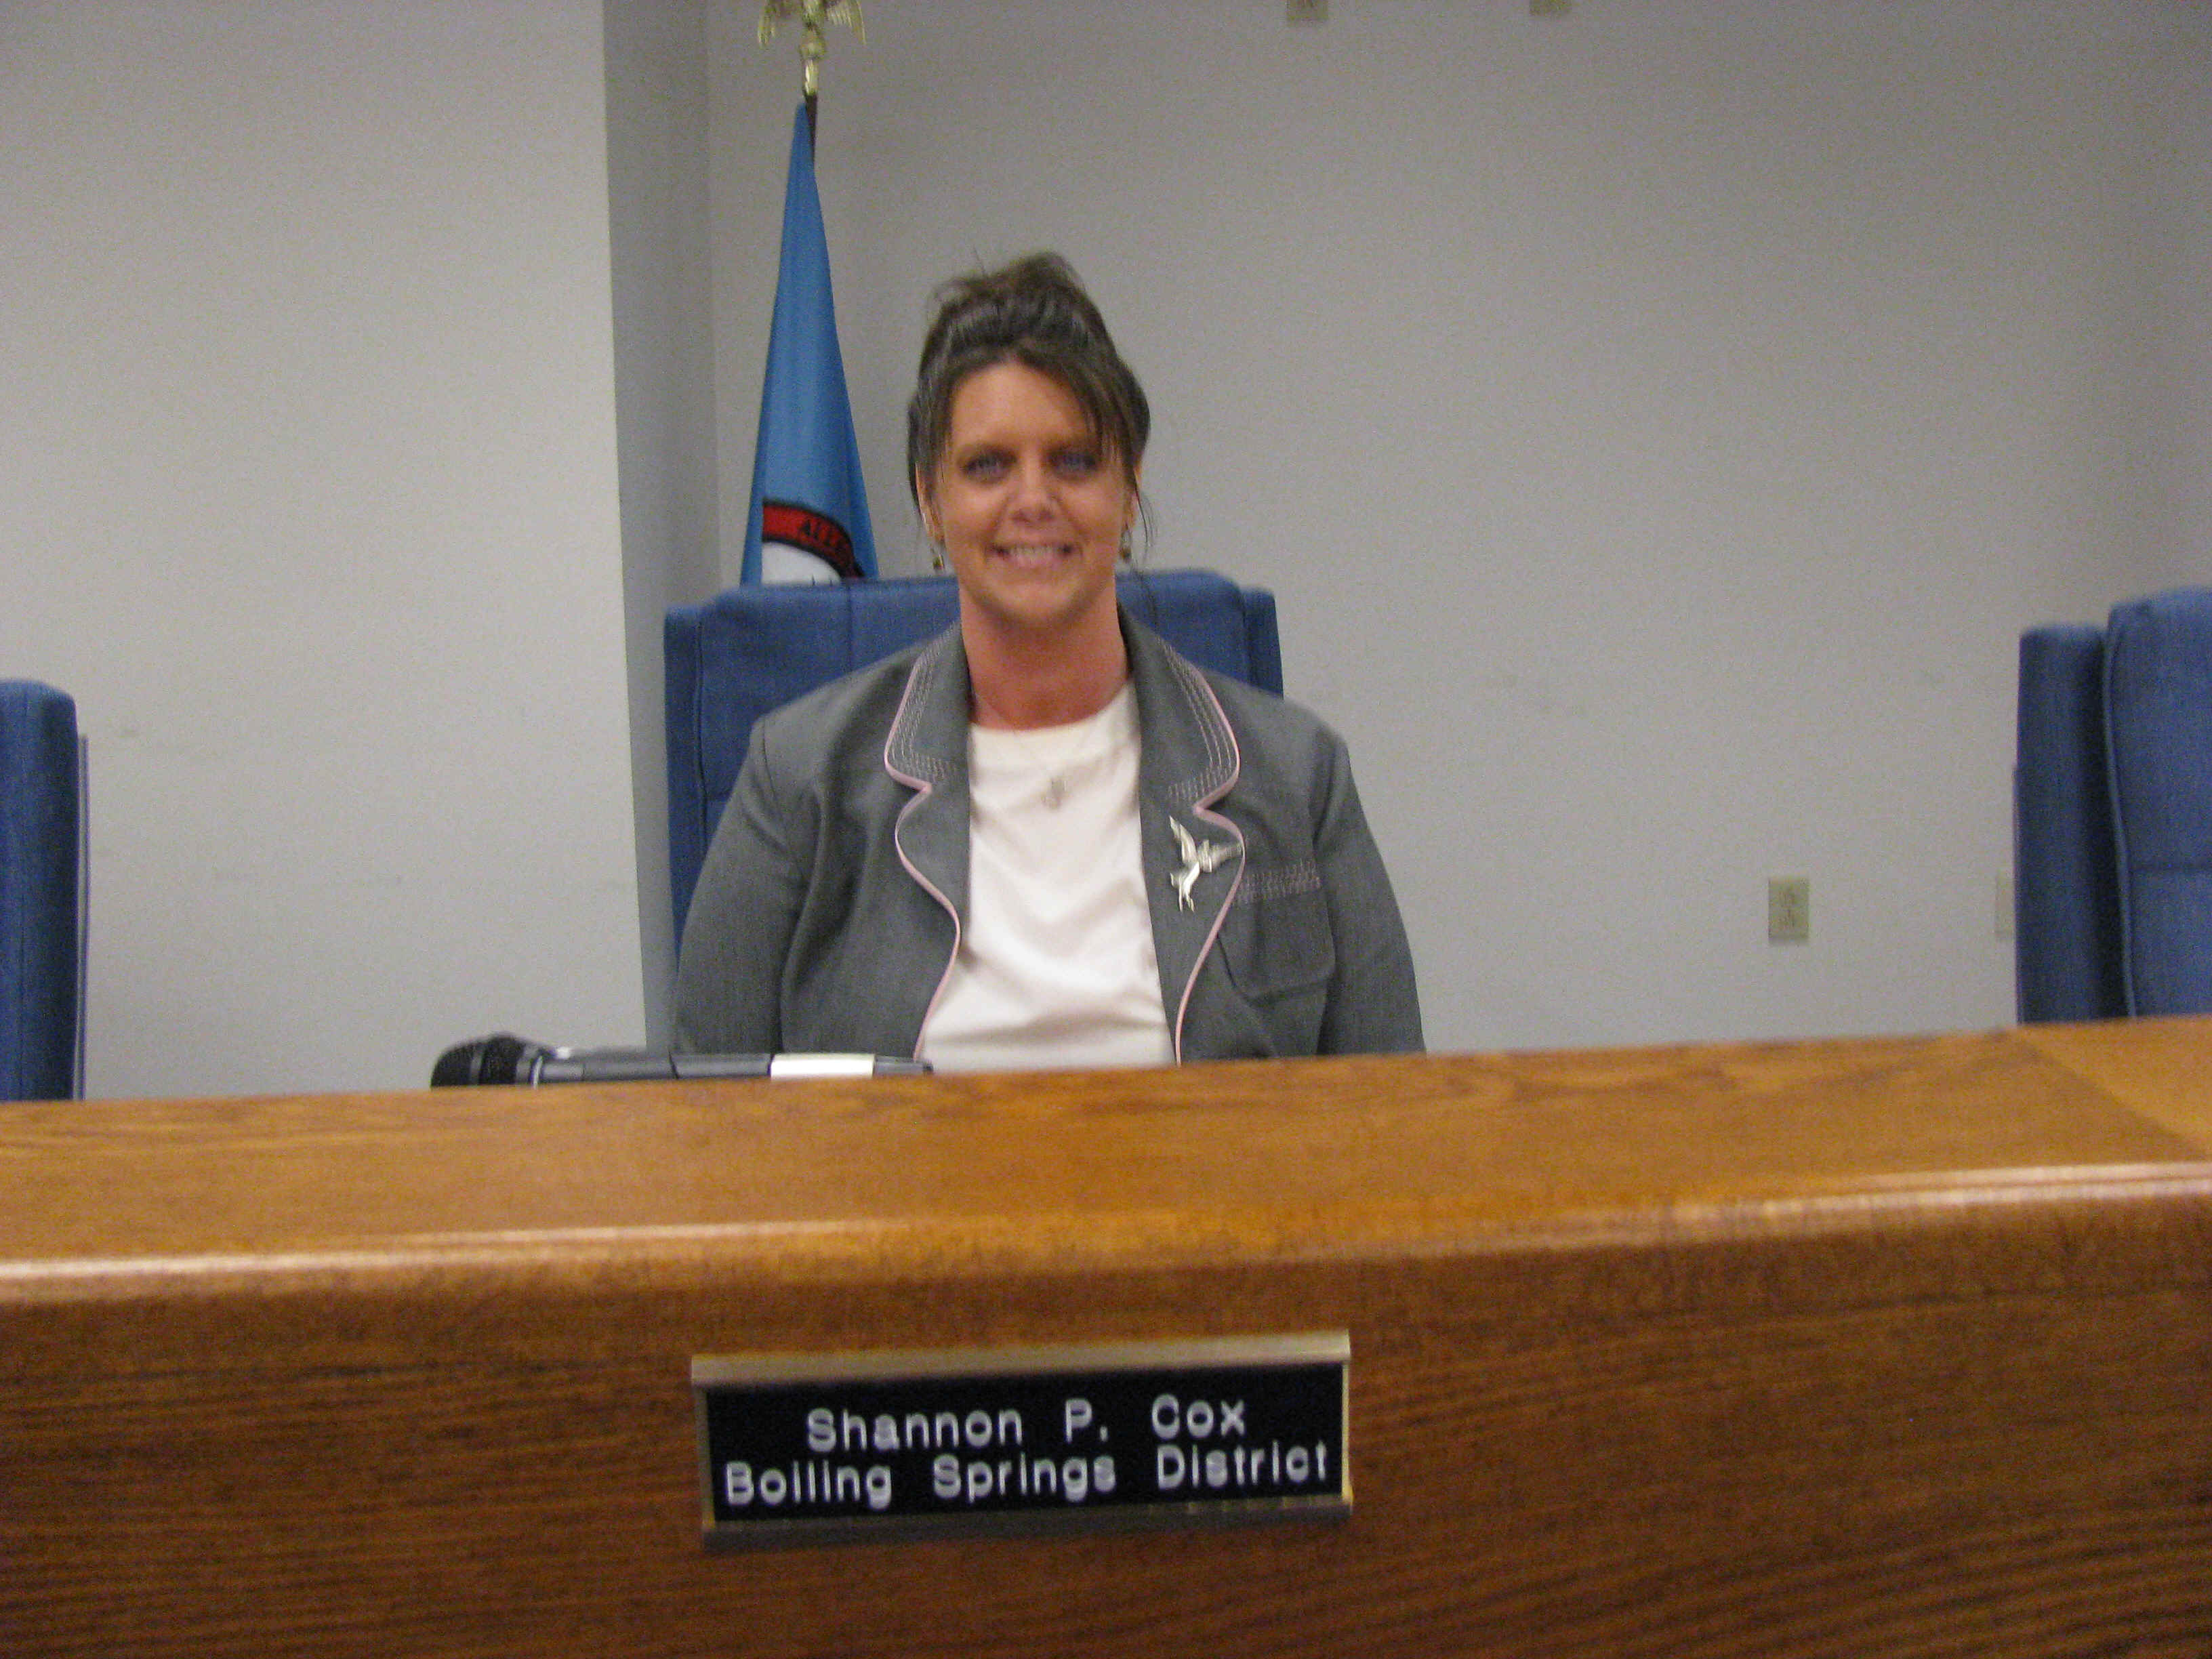 Alleghany Co VA Board of Supervisors Member - Shannon P. Cox